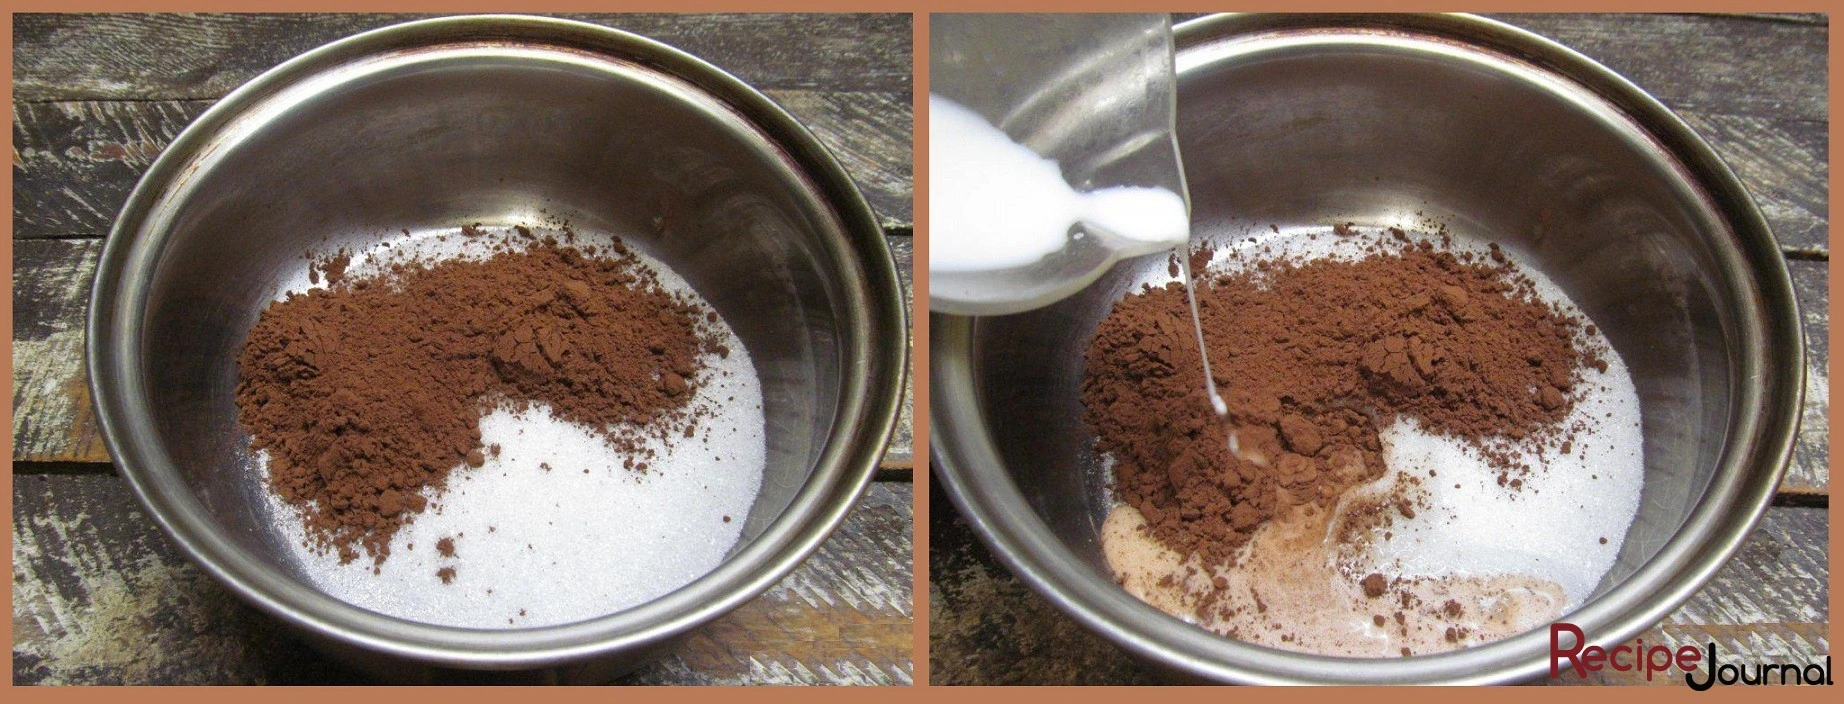 В кастрюльке смешиваем сахар и какао порошок, добавляем молоко.